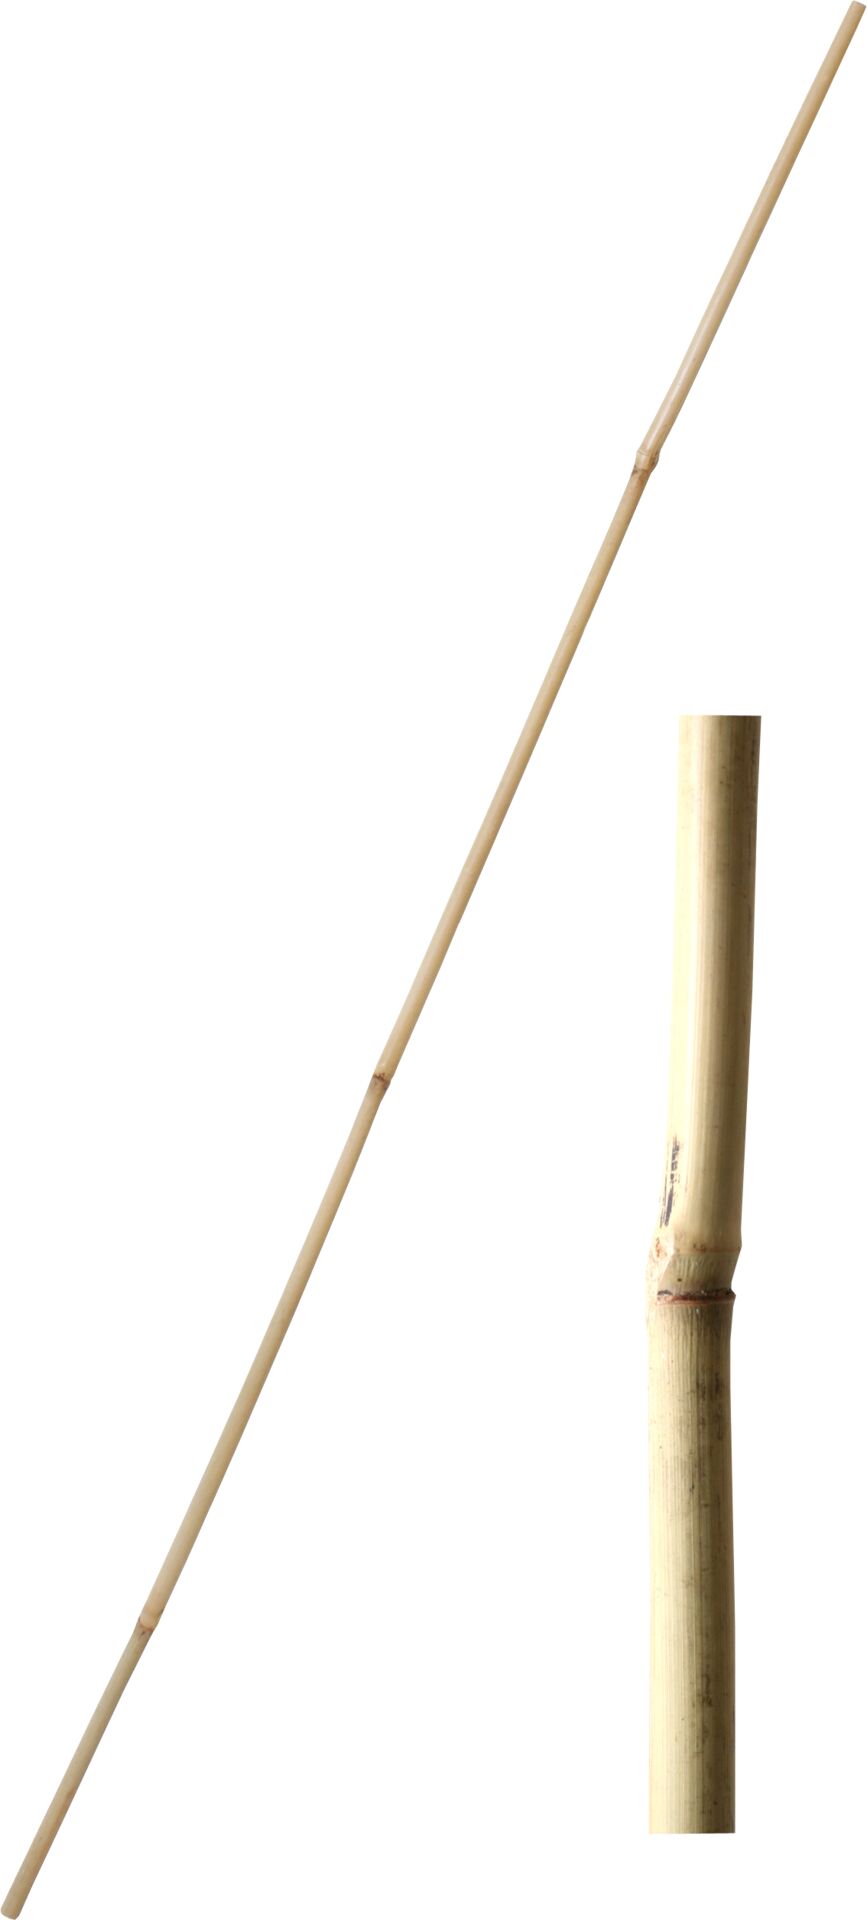 Tyč bambusová 150/(153) cm tl. 12-14 mm - 4517db86 c206 4e9f 9698 37895f717cb3